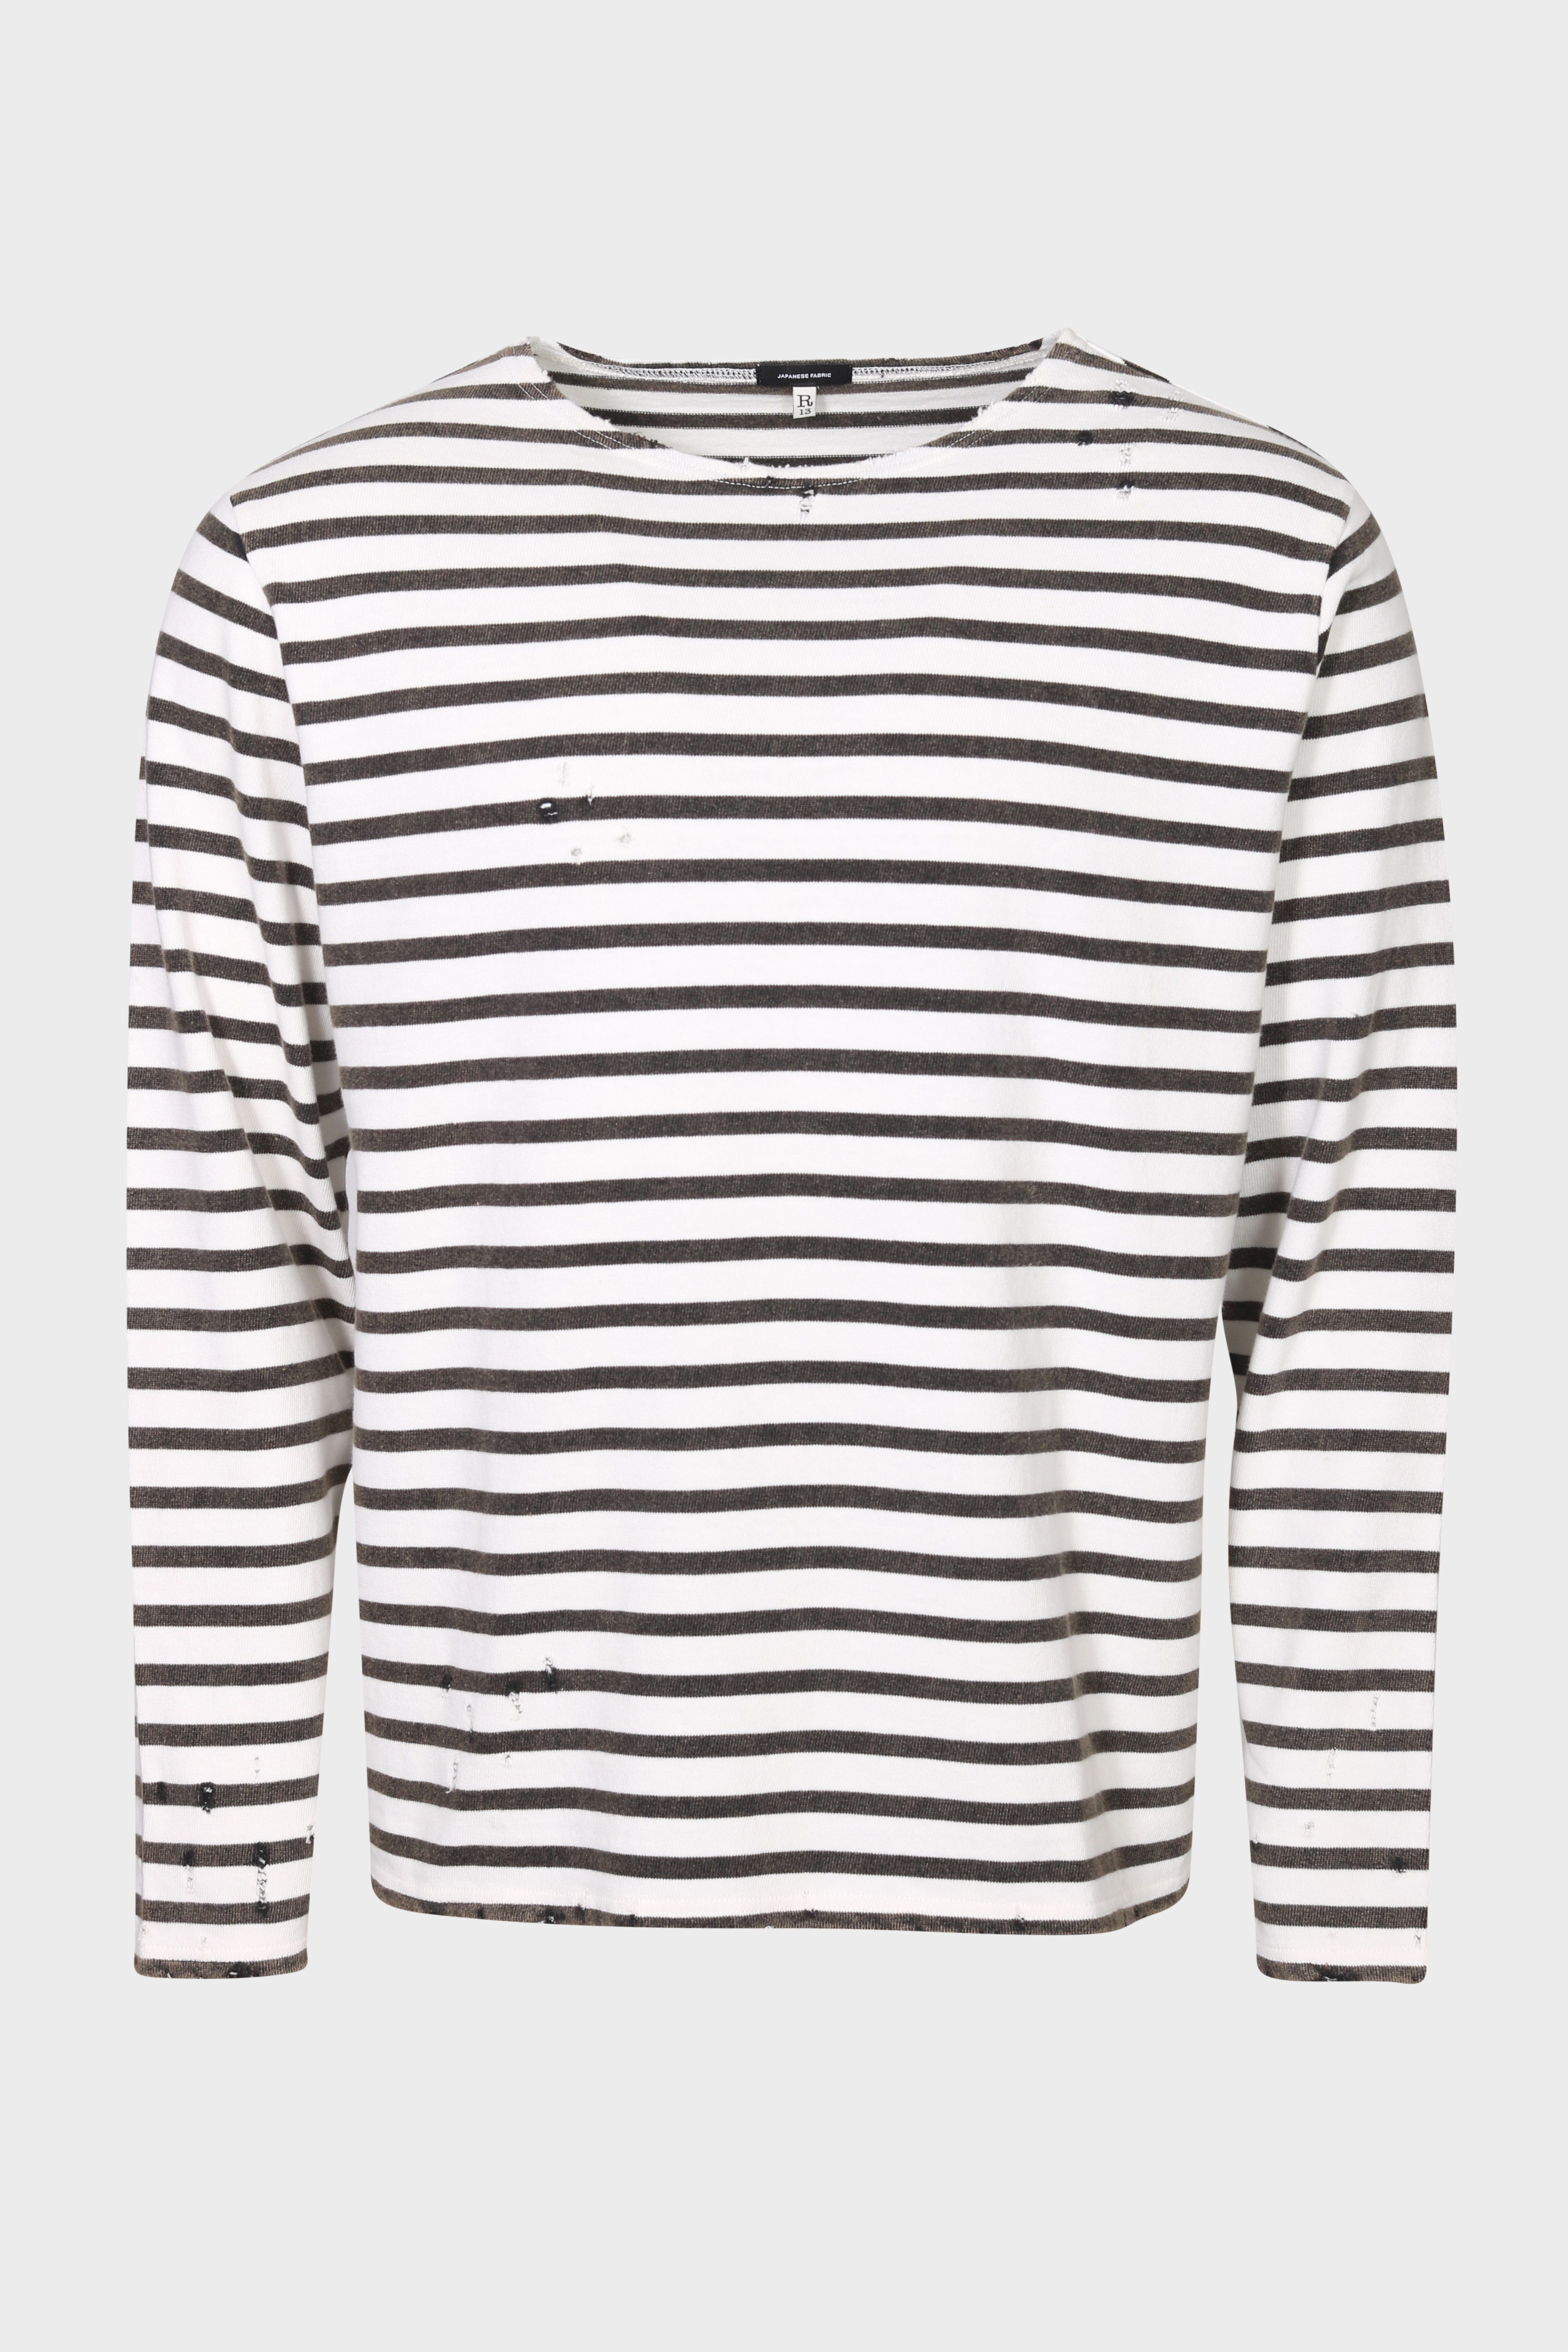 R13 Breton Sweater in Black/Ecru Stripe L